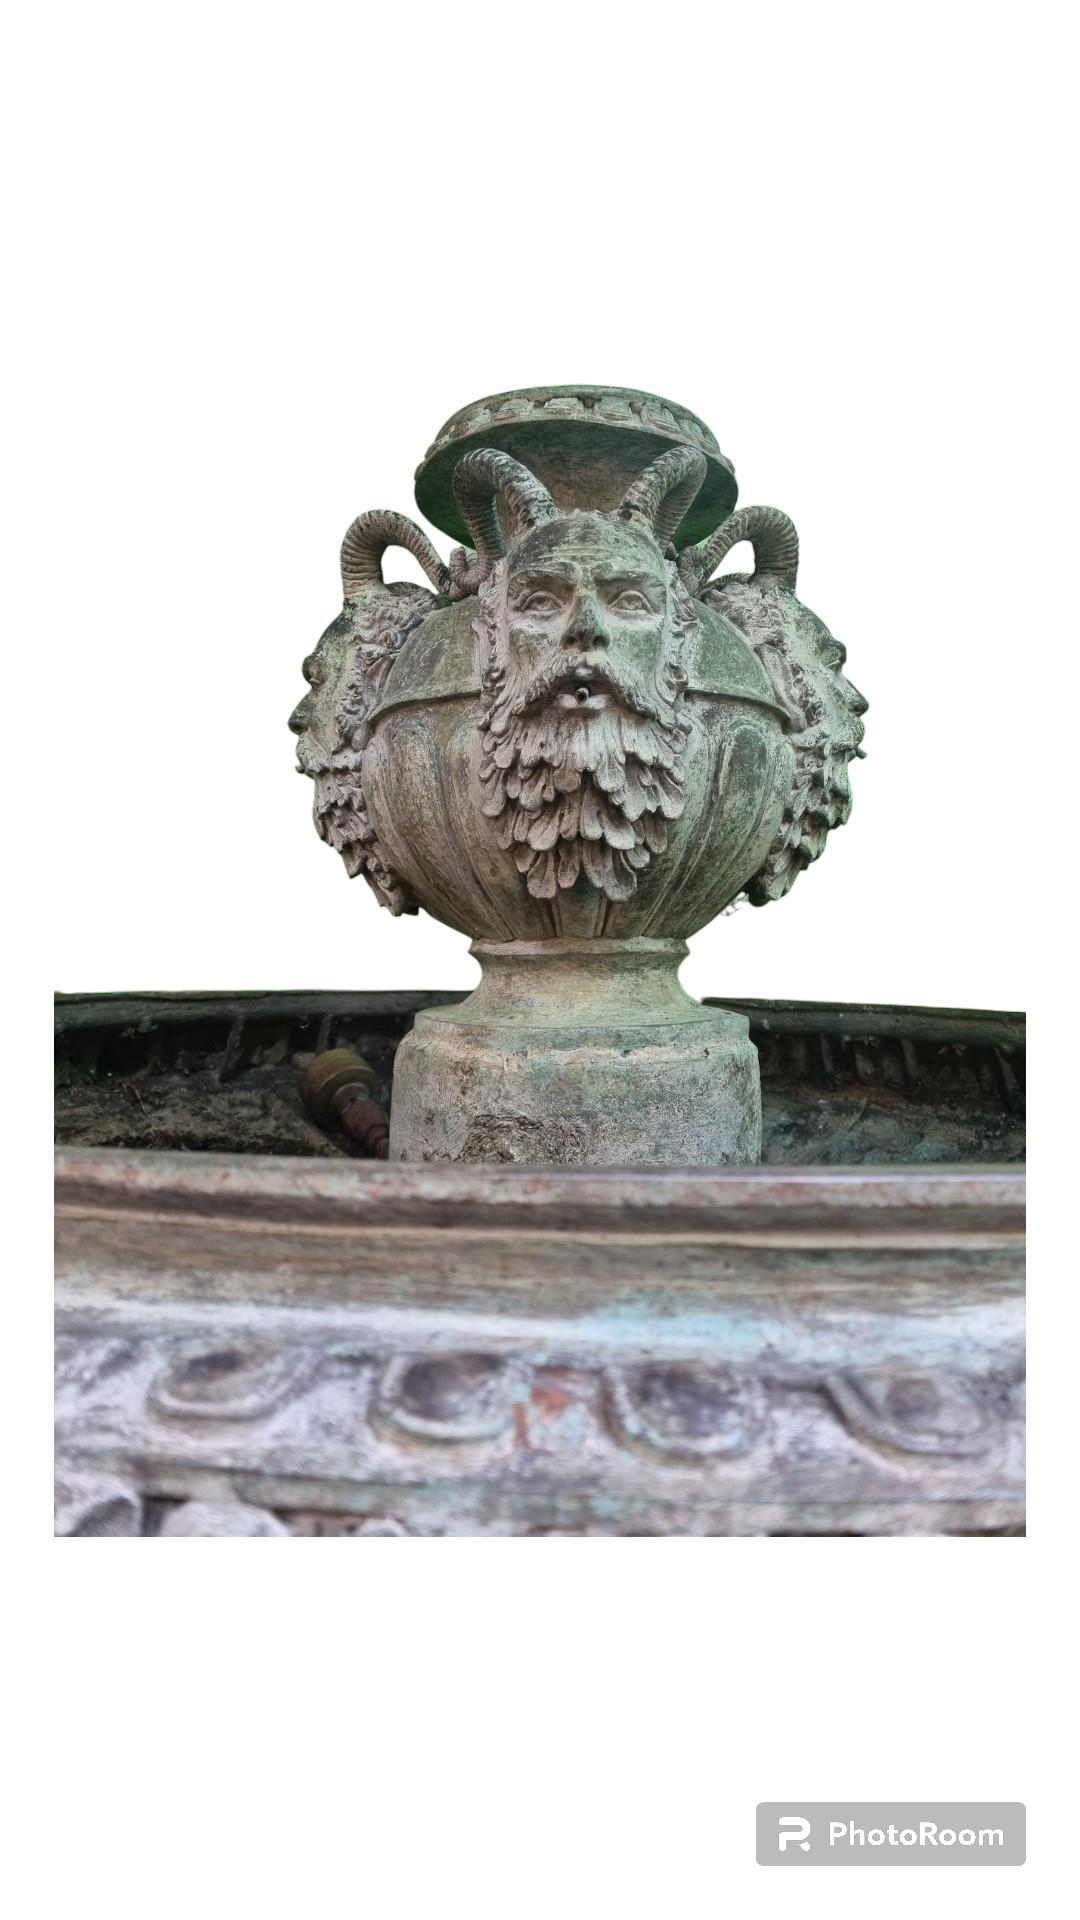 Une magnifique fontaine en bronze de style néoclassique qui s'élève à une hauteur impressionnante de 7 pieds.
Cette fontaine fait jaillir de l'eau par le haut
Depuis le bas, il est surélevé par une colonne et quatre demoiselles classiques.
Jolie